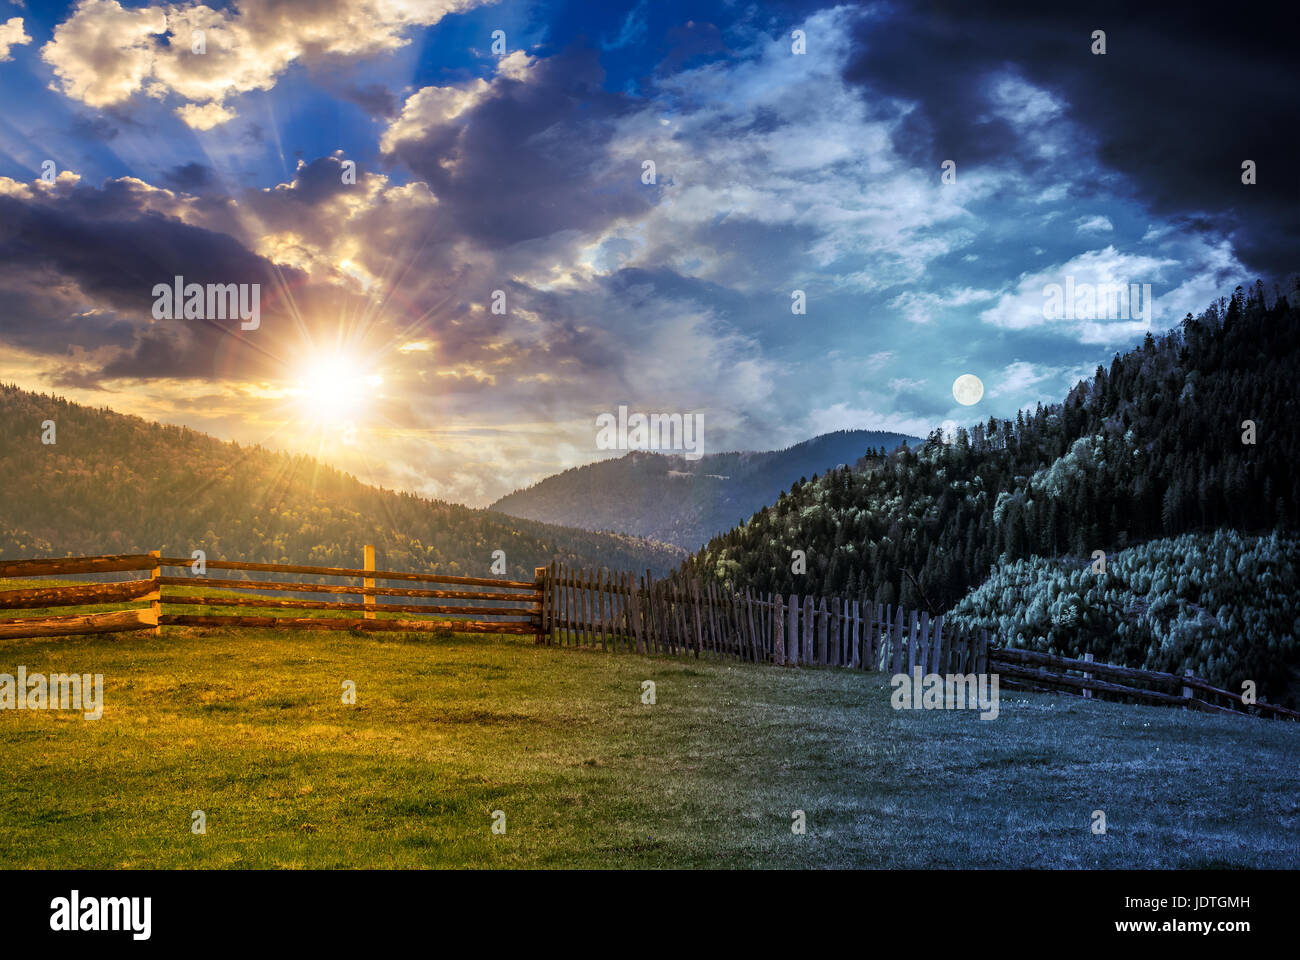 Changement d'heure jour et nuit. concept clôture en bois à travers le pré herbeux dans les montagnes des Carpates. beau paysage campagnard avec ciel nuageux wit Banque D'Images